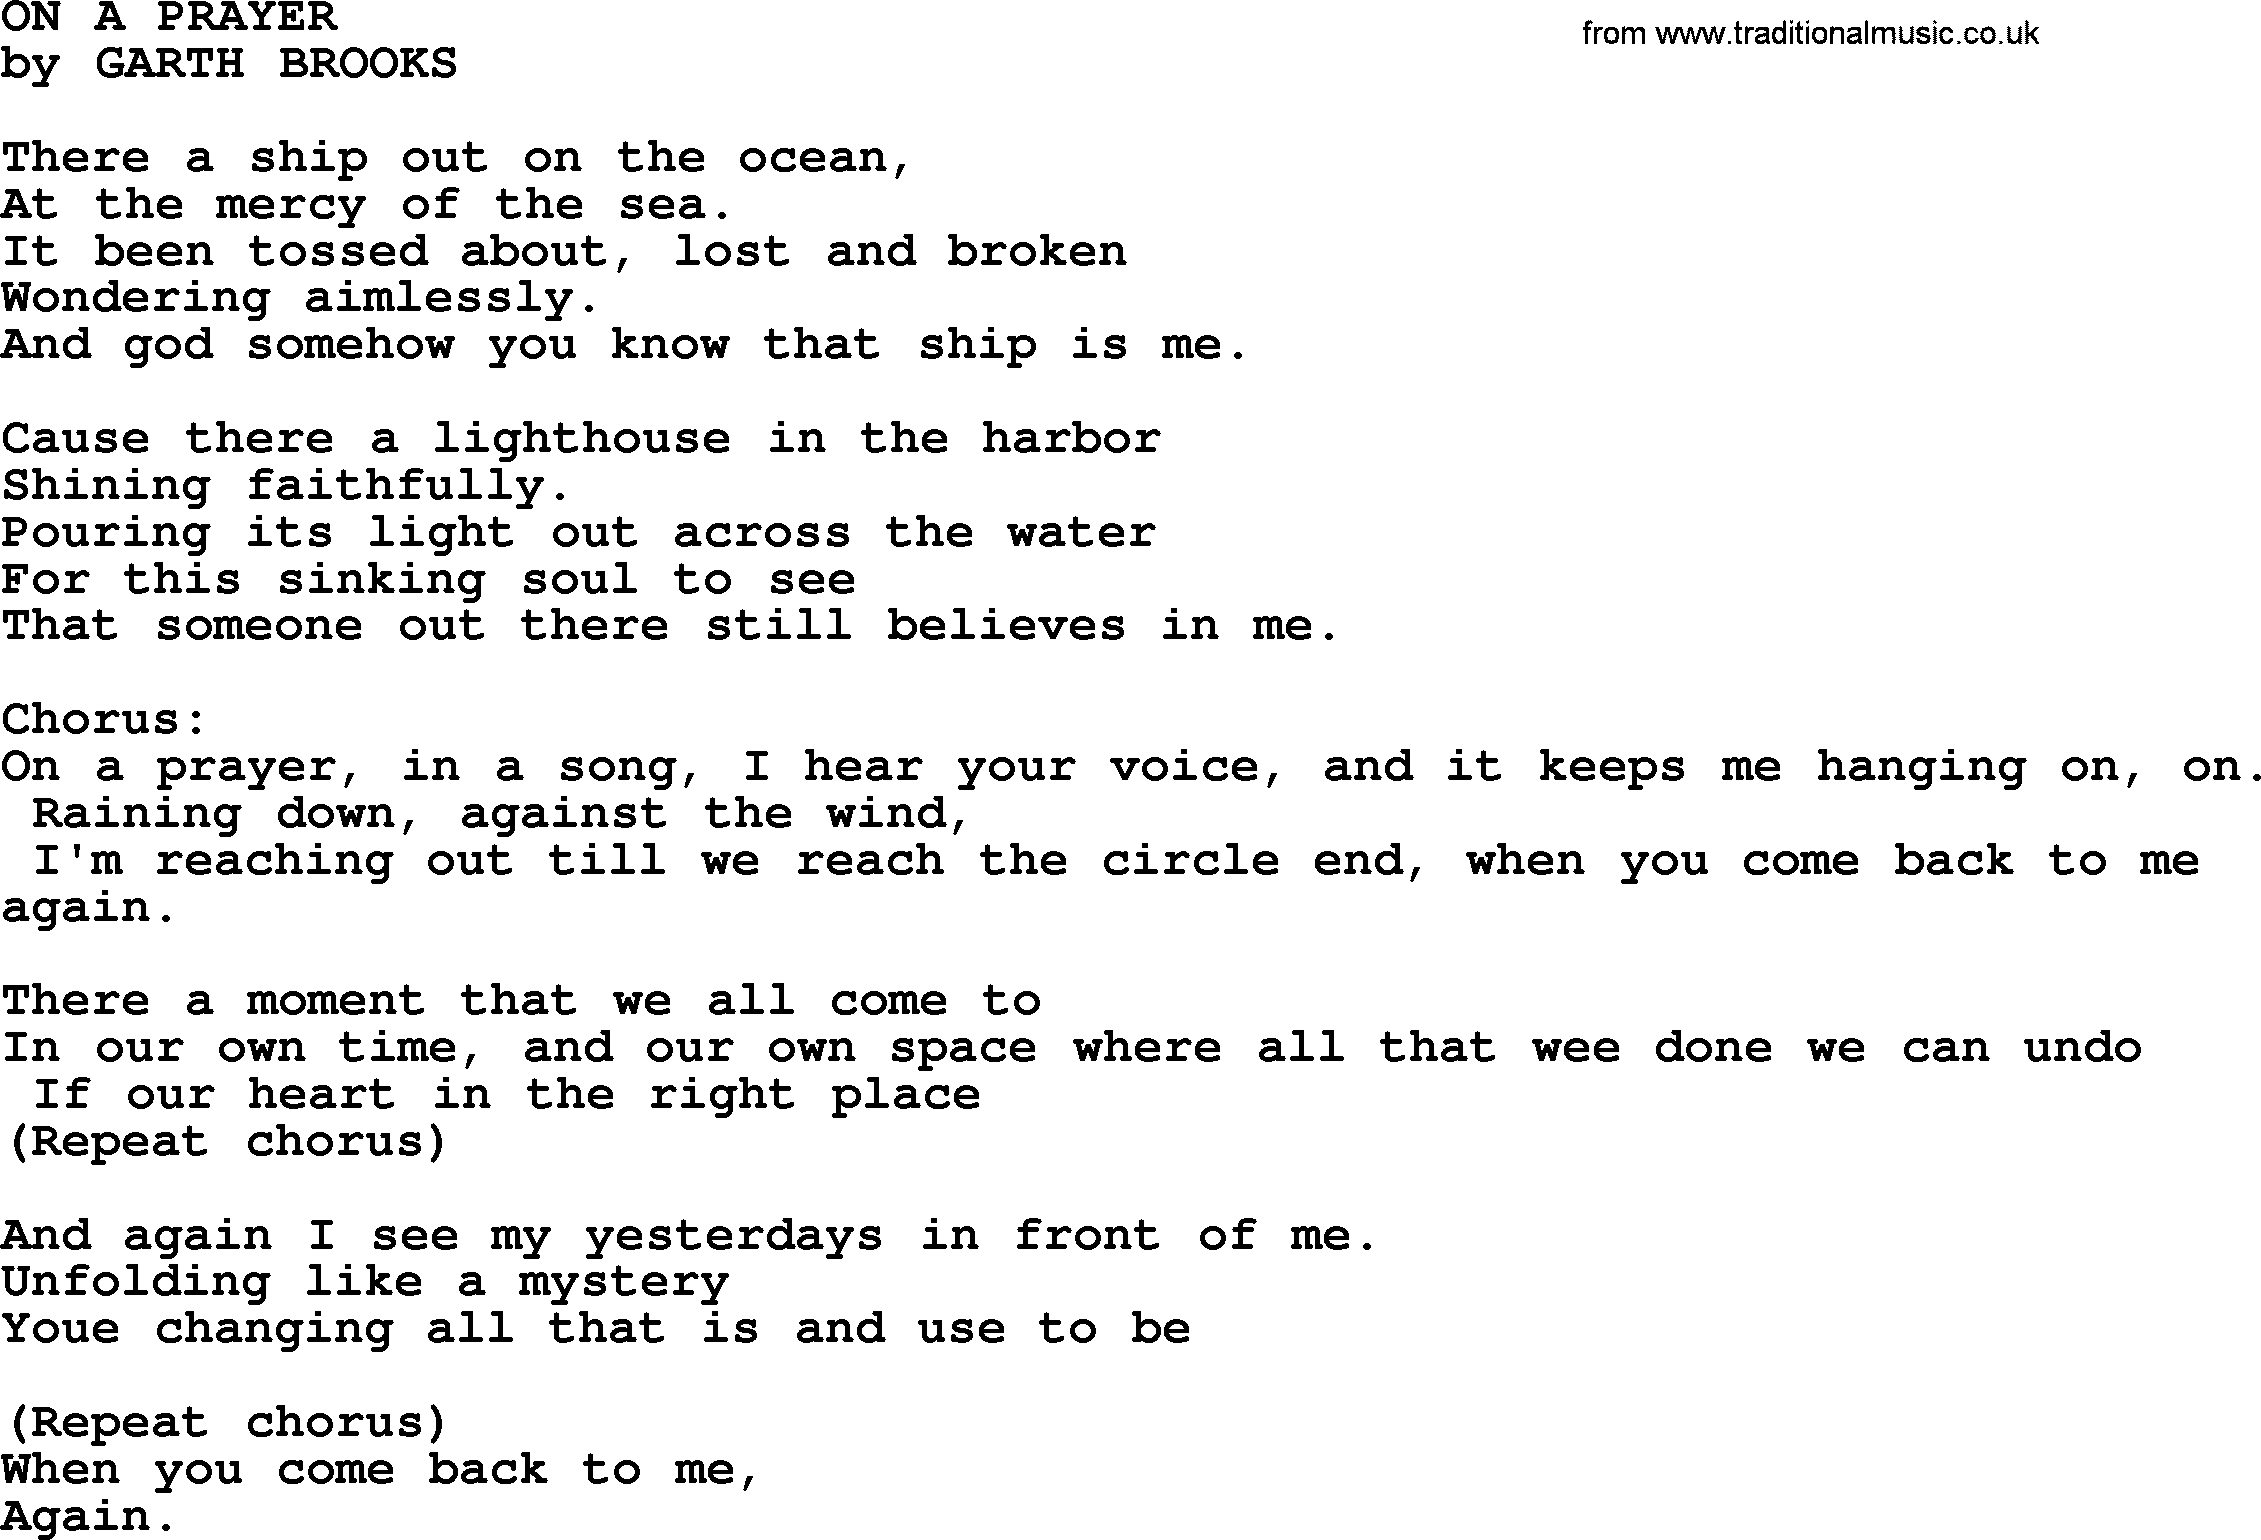 Garth Brooks song: On A Prayer, lyrics